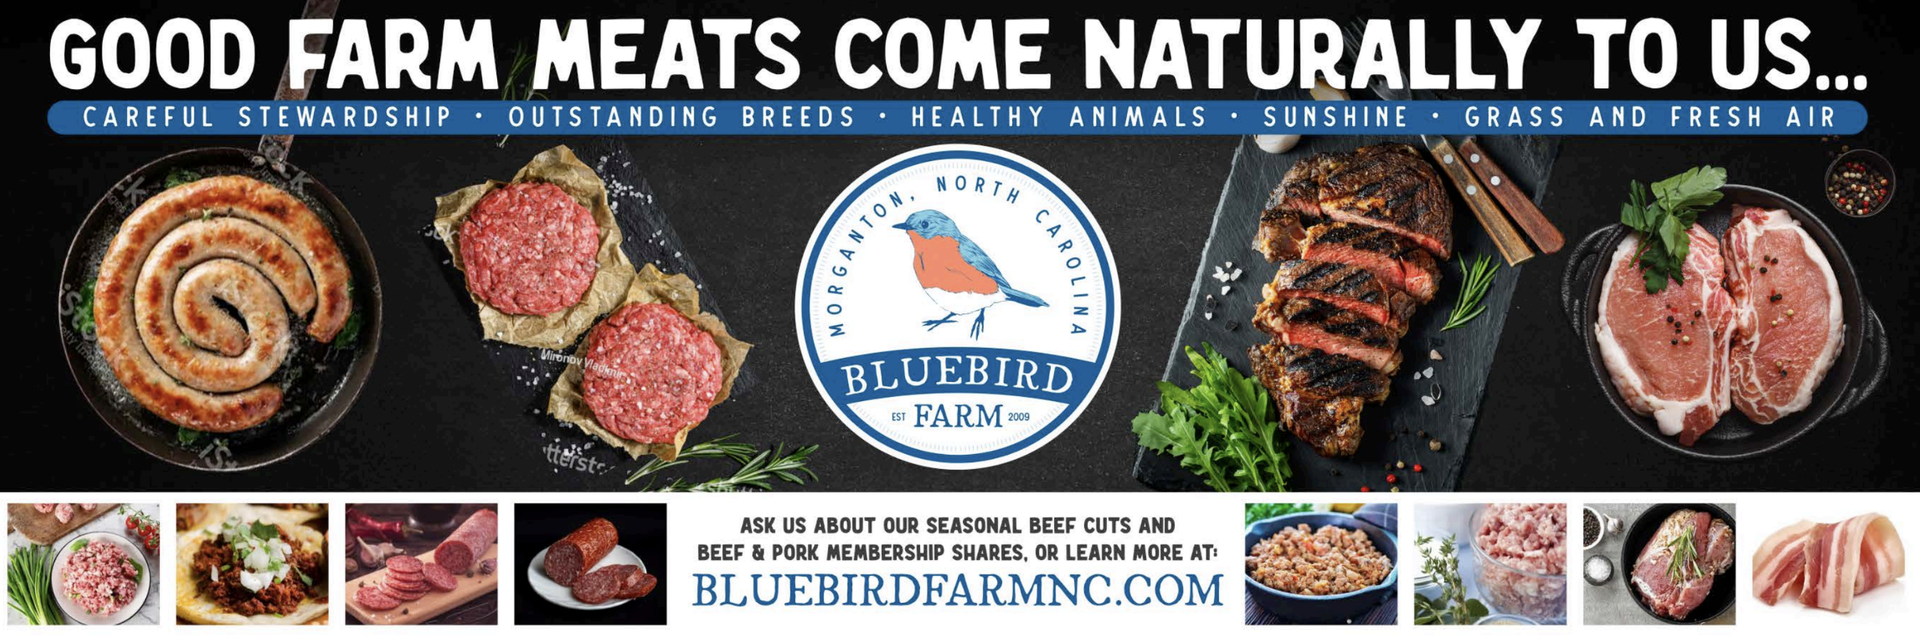 Bluebird Farm Meat Banner Design